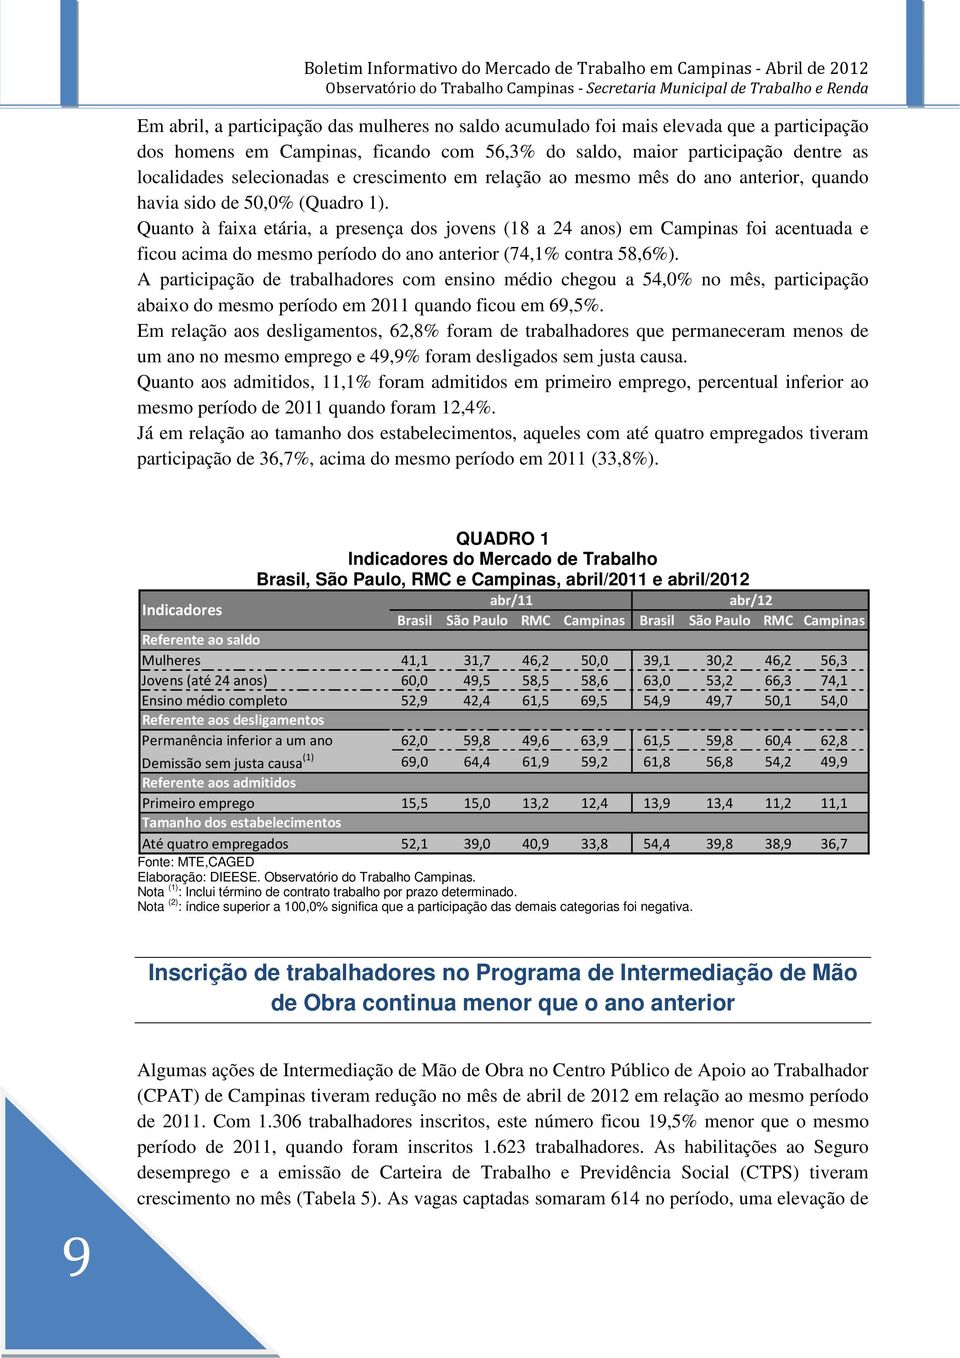 Quanto à faixa etária, a presença dos jovens (18 a 24 anos) em Campinas foi acentuada e ficou acima do mesmo período do ano anterior (74,1% contra 58,6%).